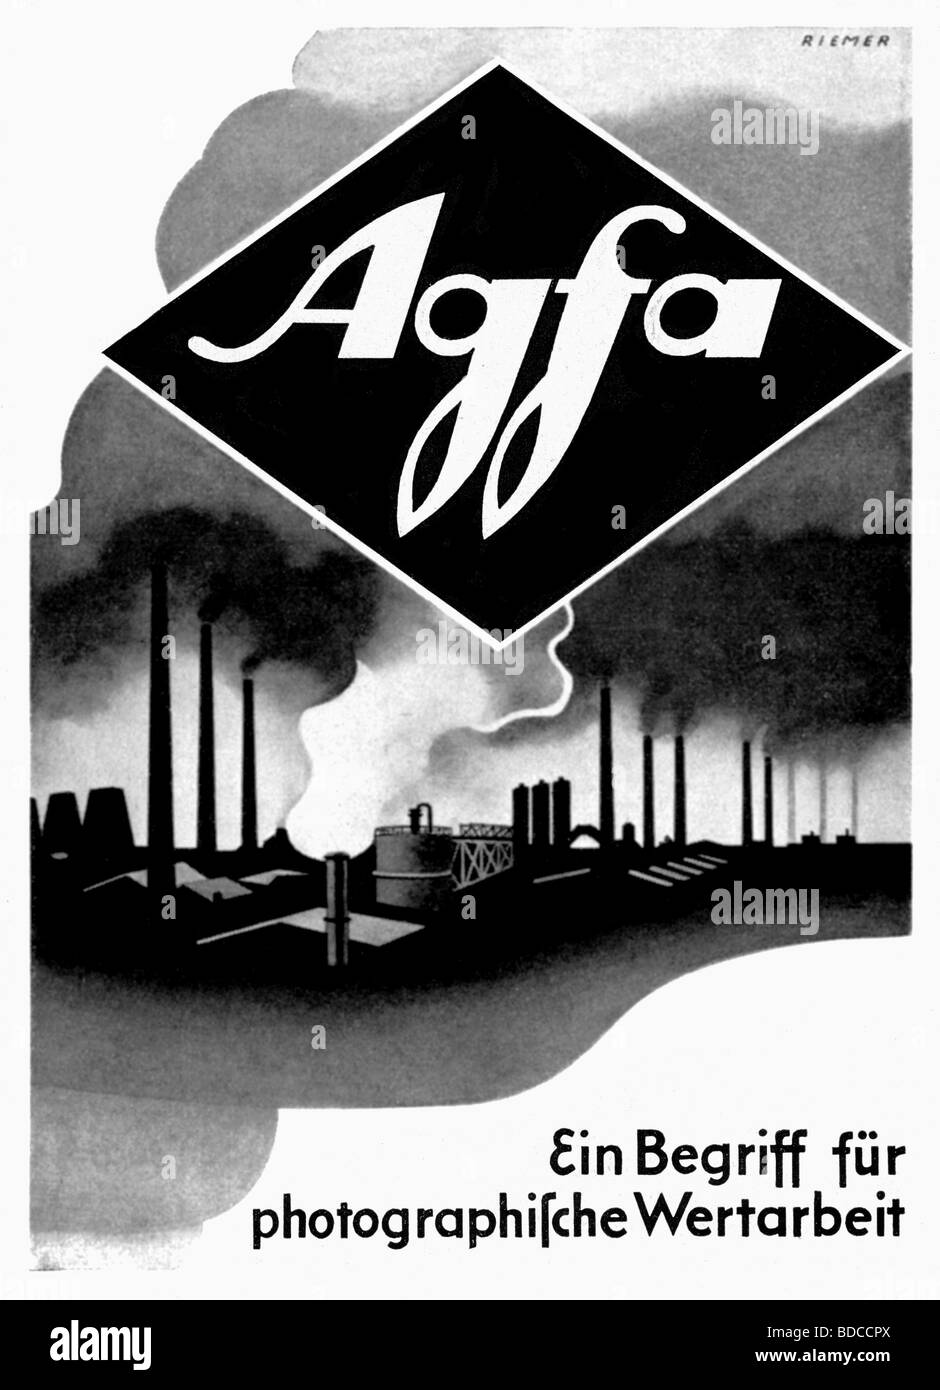 Publicidad De 1942 Antiguo Advertising Agfa Y2366 Productos Fotográfica Agfa 